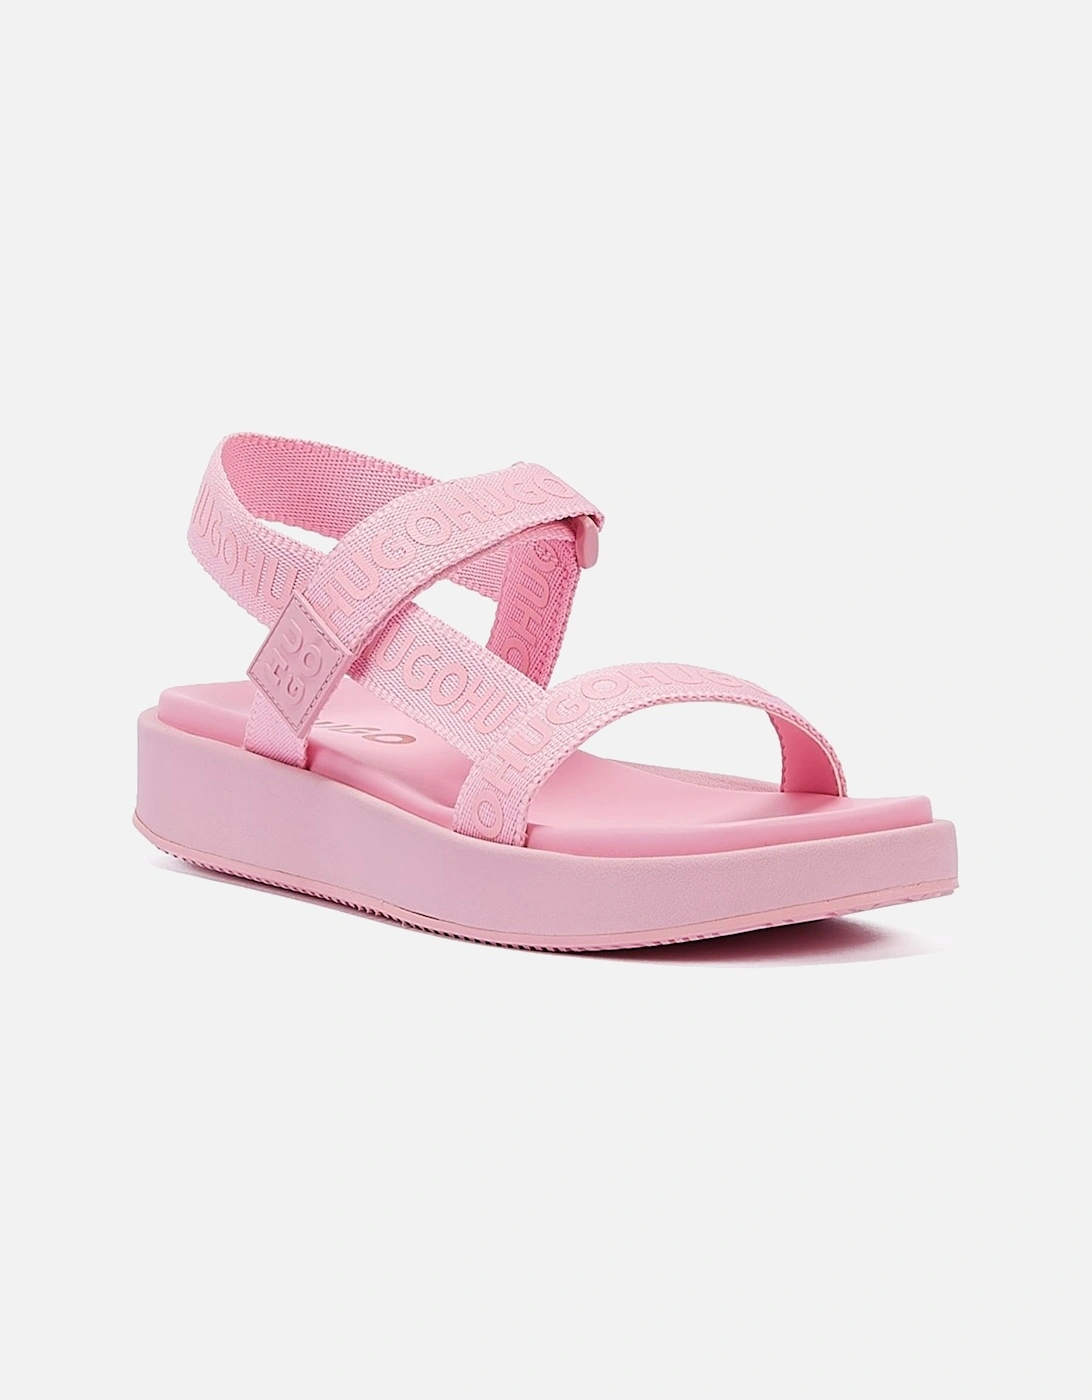 Emma Strap Women's Pink Sandals